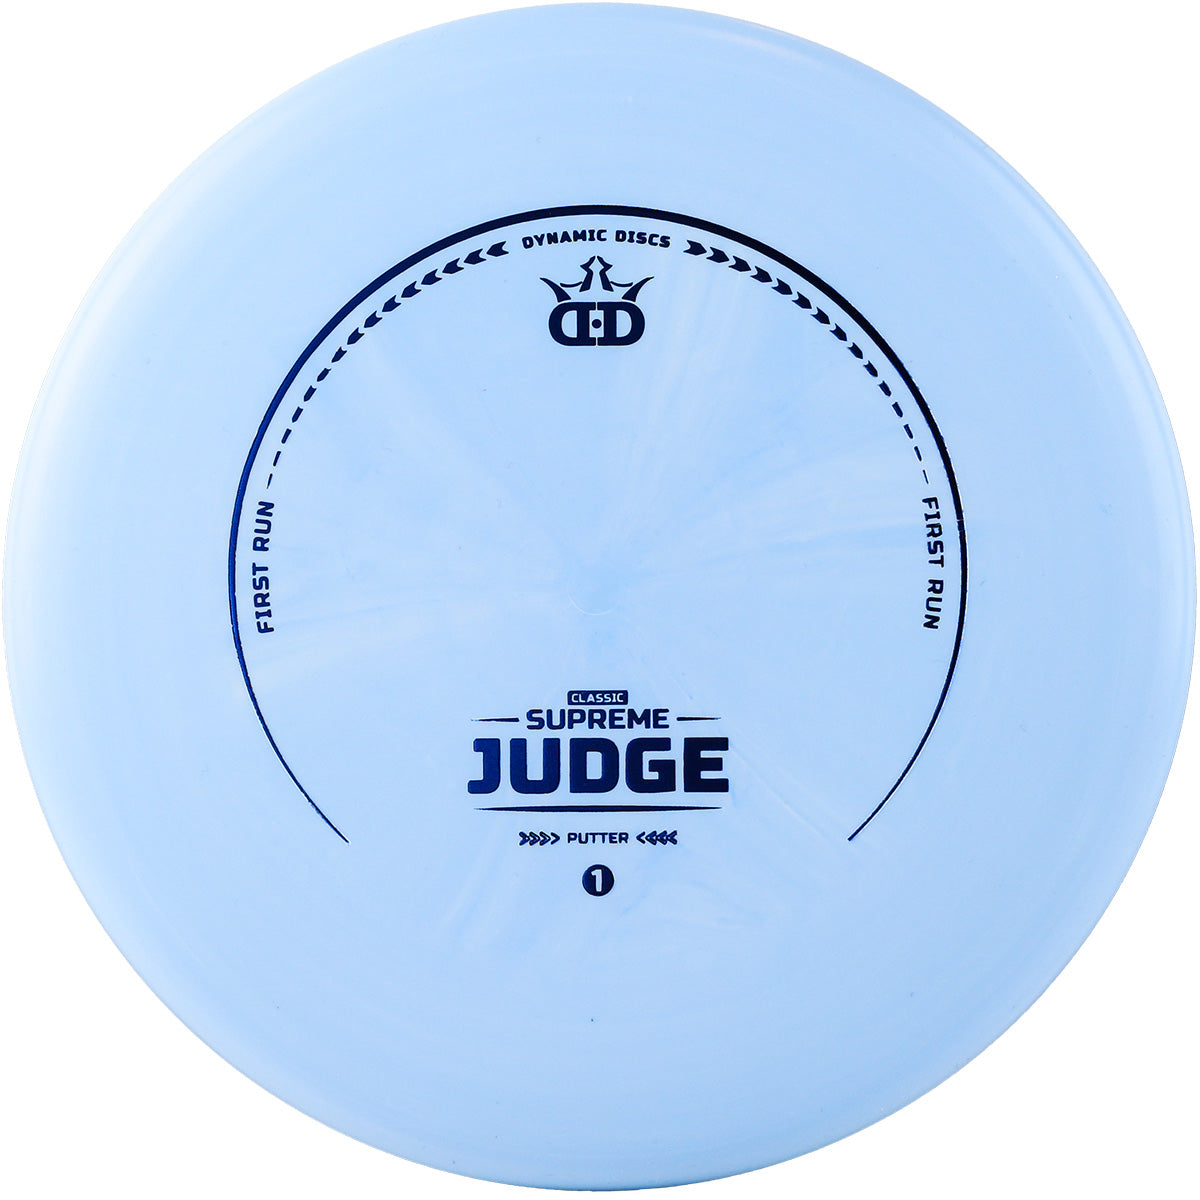 Supreme Classic Judge - First Run (6941105651777)